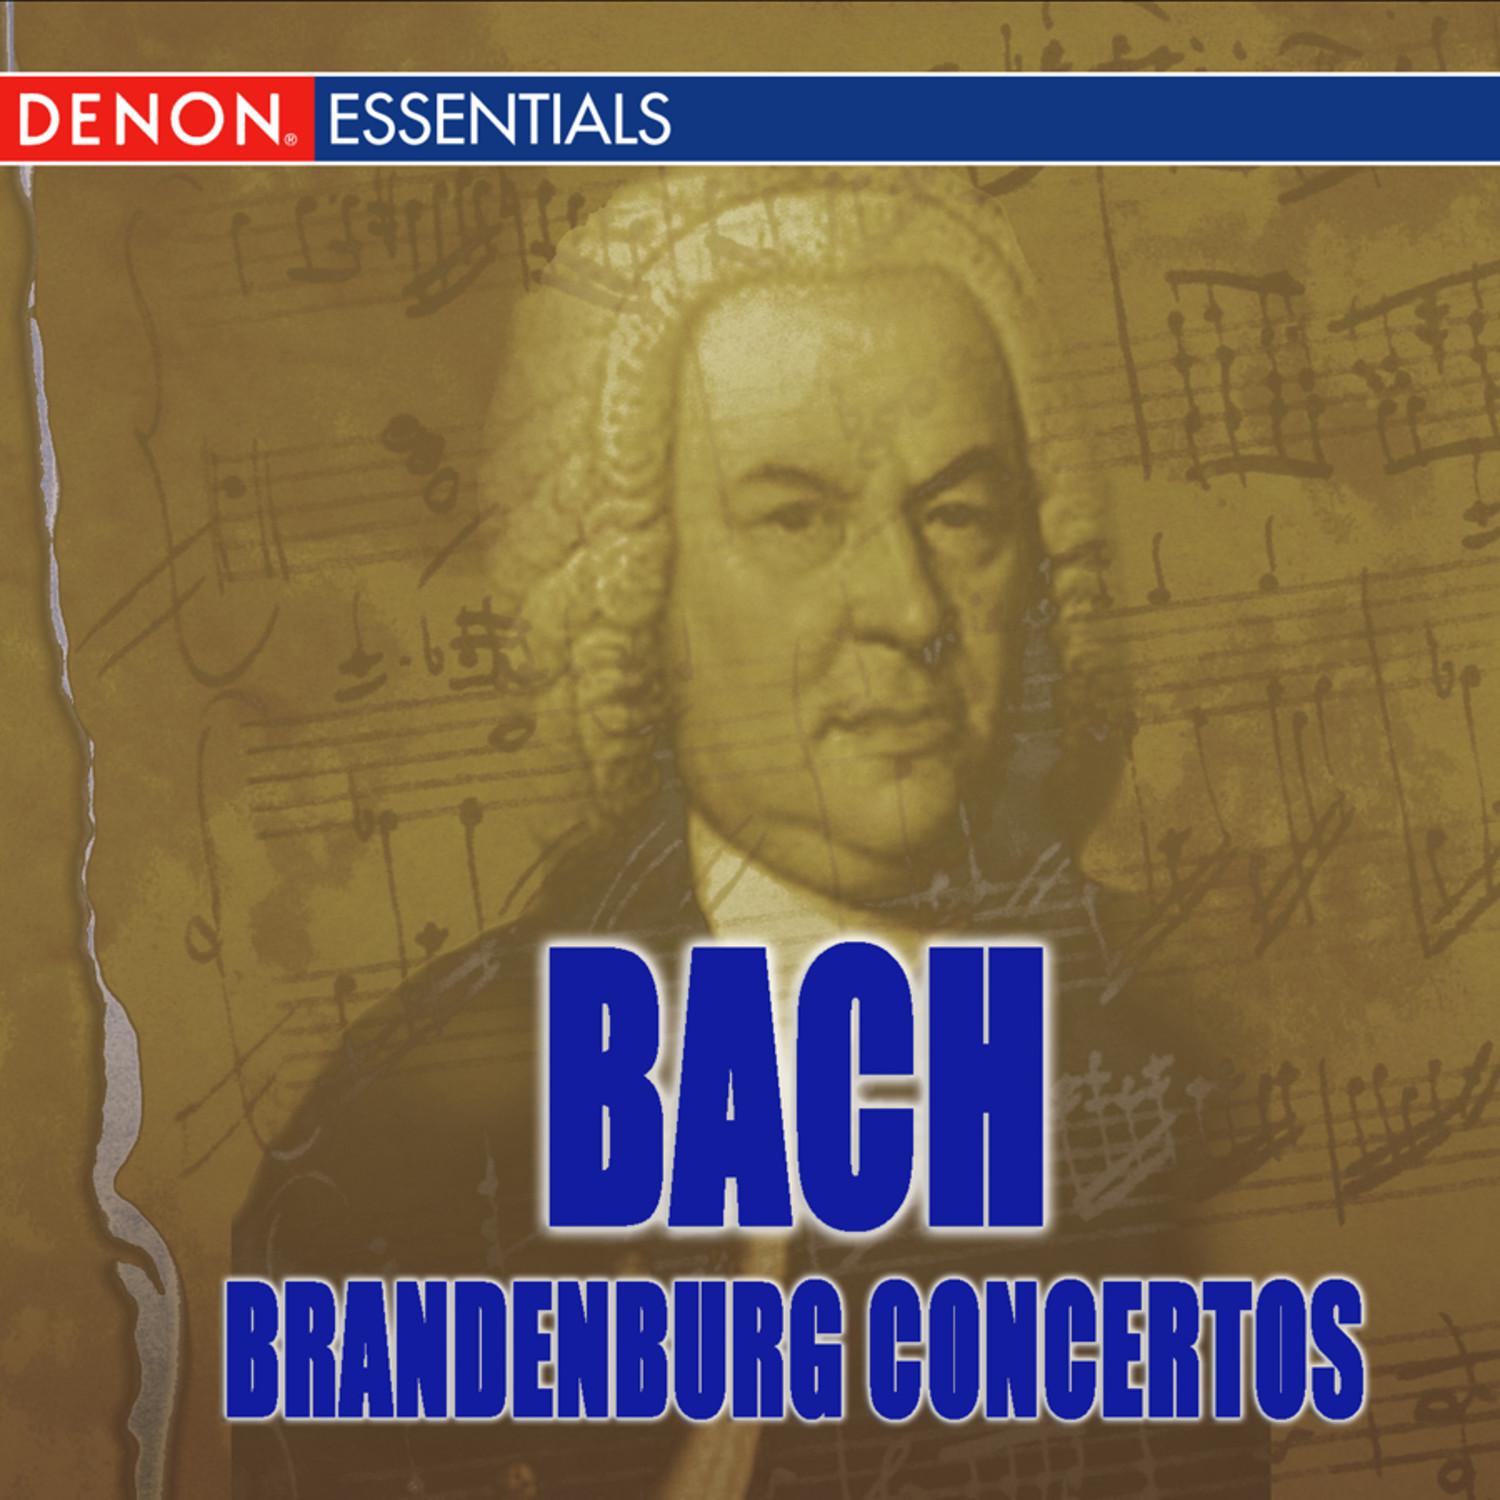 Brandenburg Concerto No. 5 in D Major BWV 1050: I. Allegro